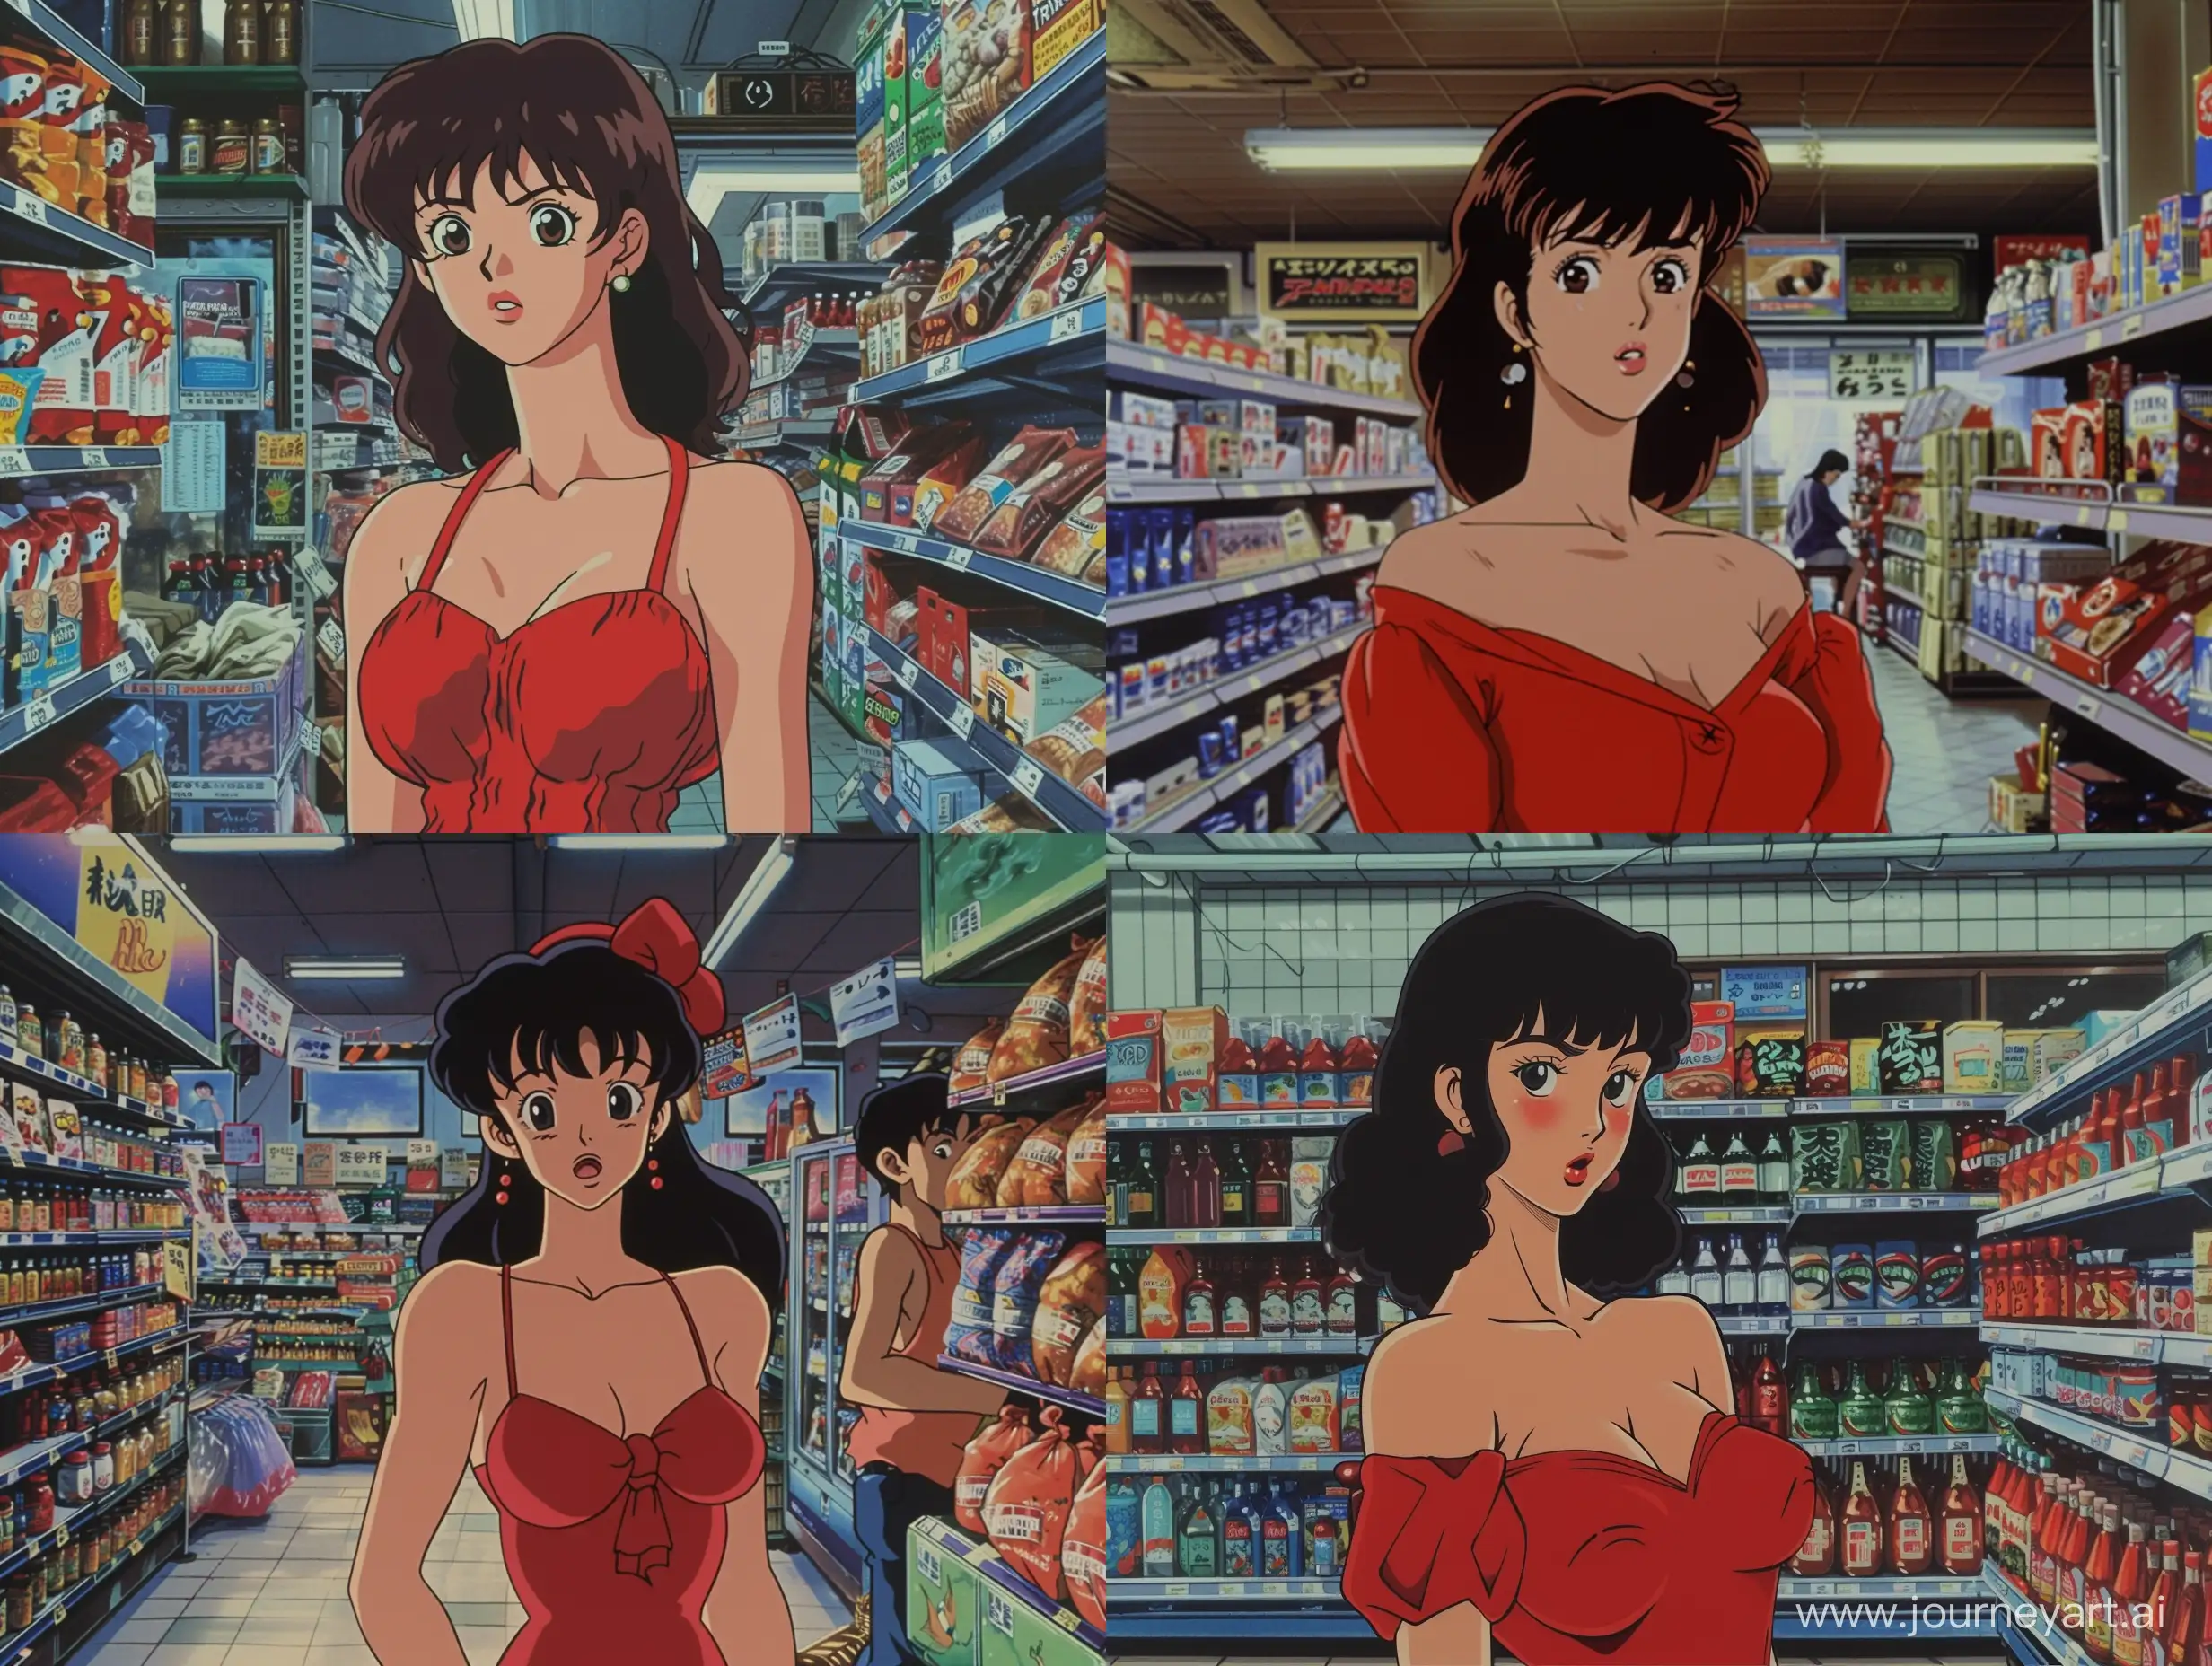 Nostalgic-90s-Cartoon-Akira-Toriyamas-Timeless-Woman-in-Red-Dress